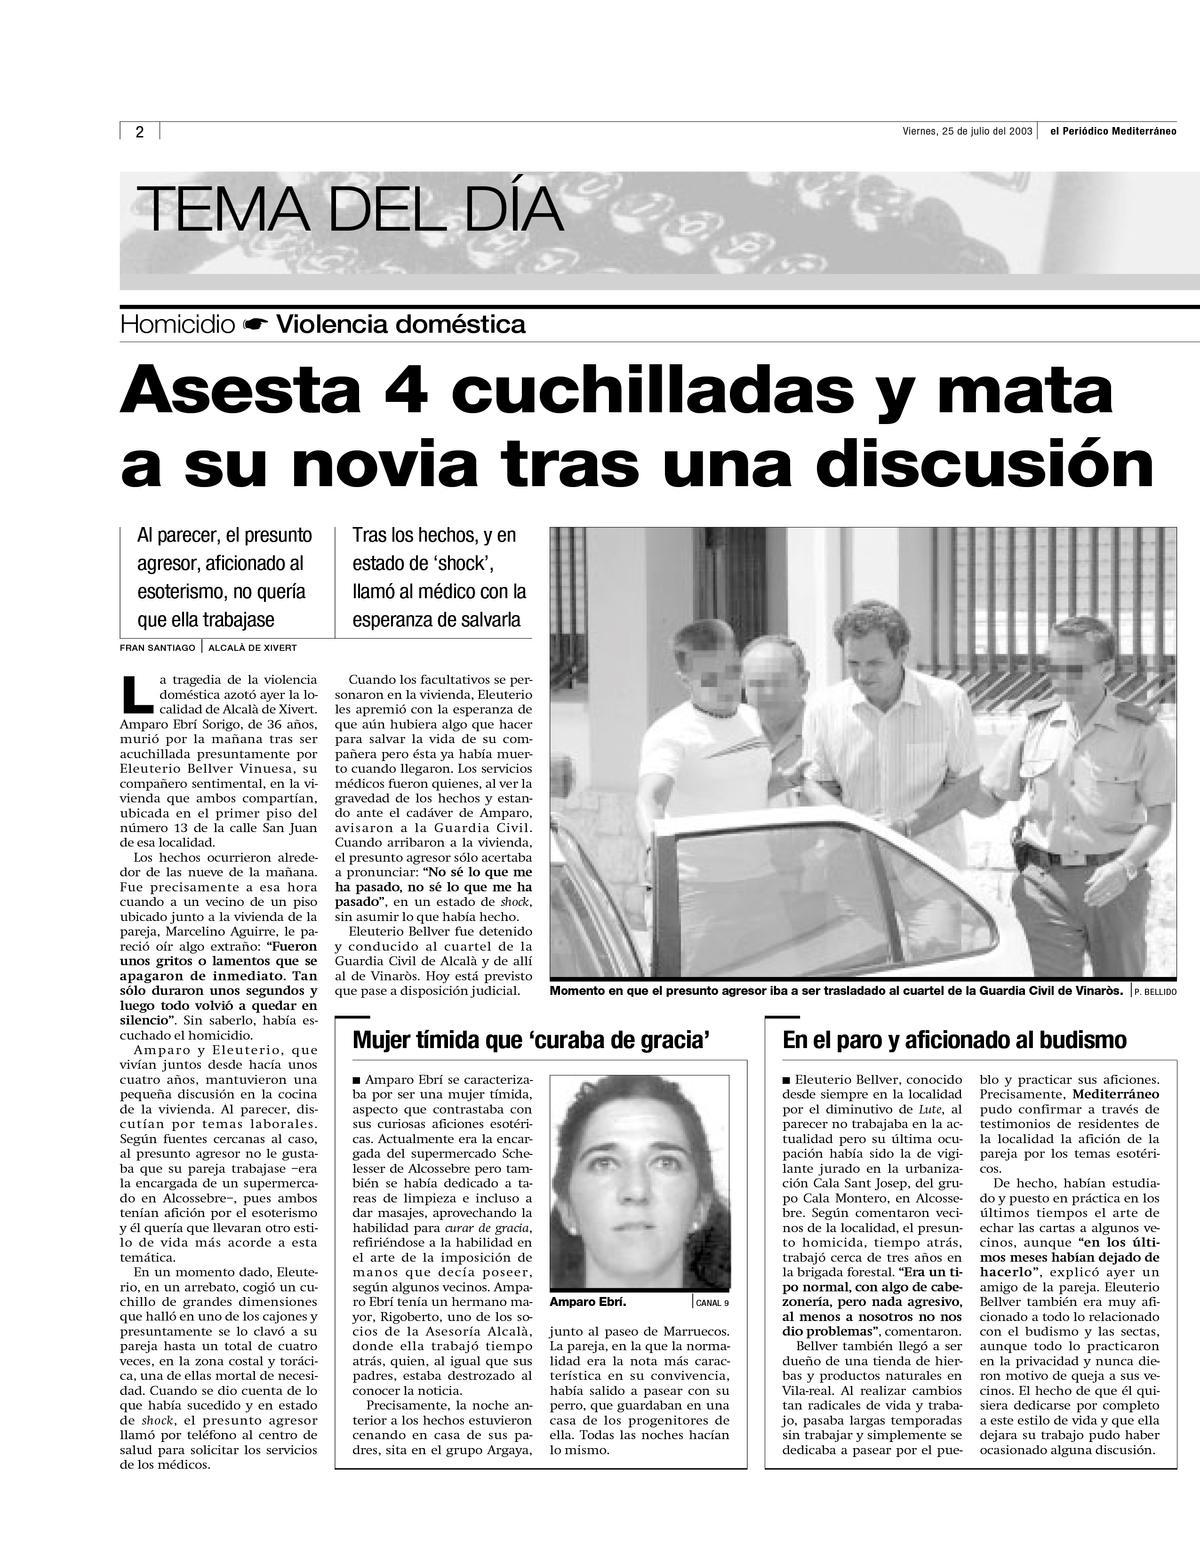 'MEDITERRÁNEO' fue el periódico que hizo una cobertura más amplia del caso.